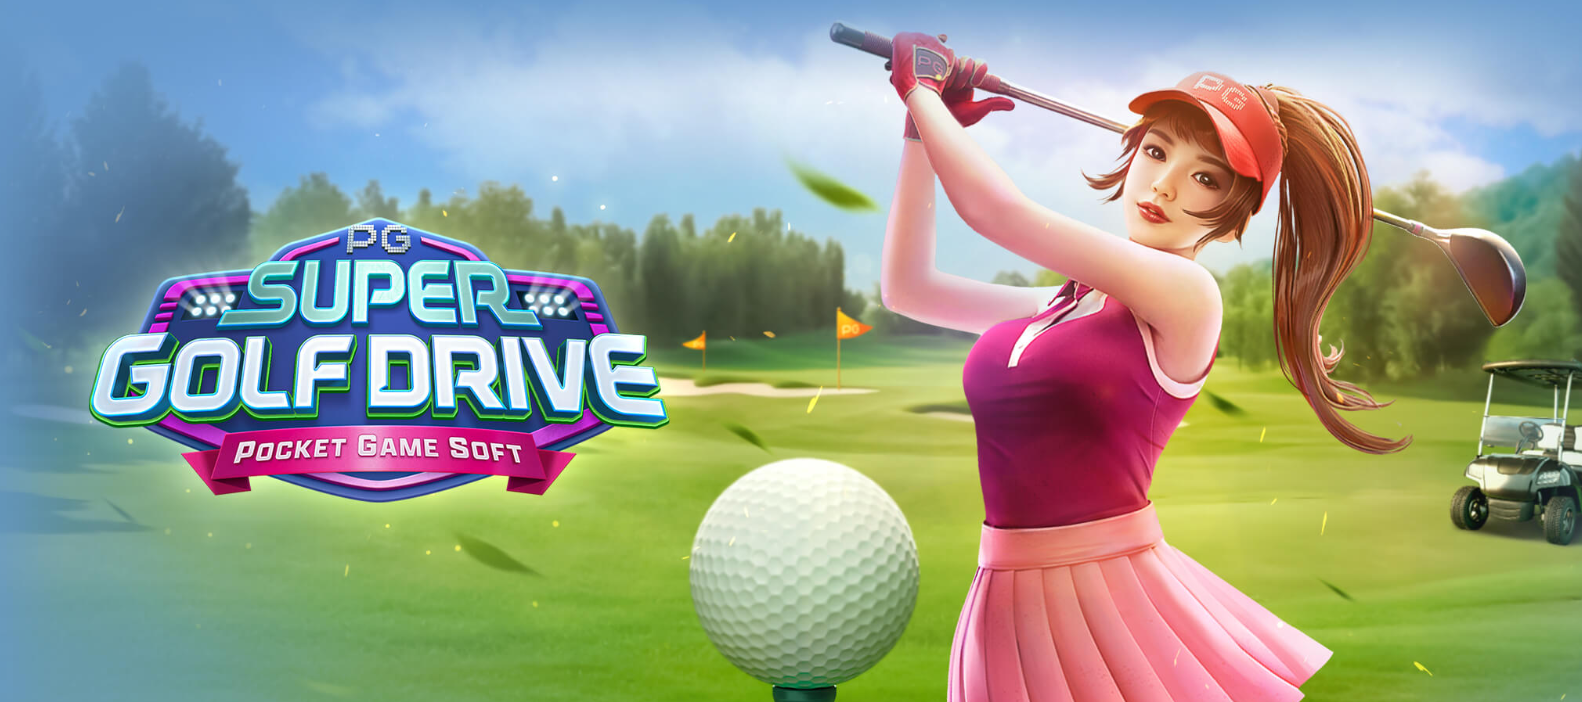 Super Golf Drive, jogo de slot, golfe, dicas de jogo, estratégias de cassino, giros grátis, símbolos wild, gerenciamento de bankroll.